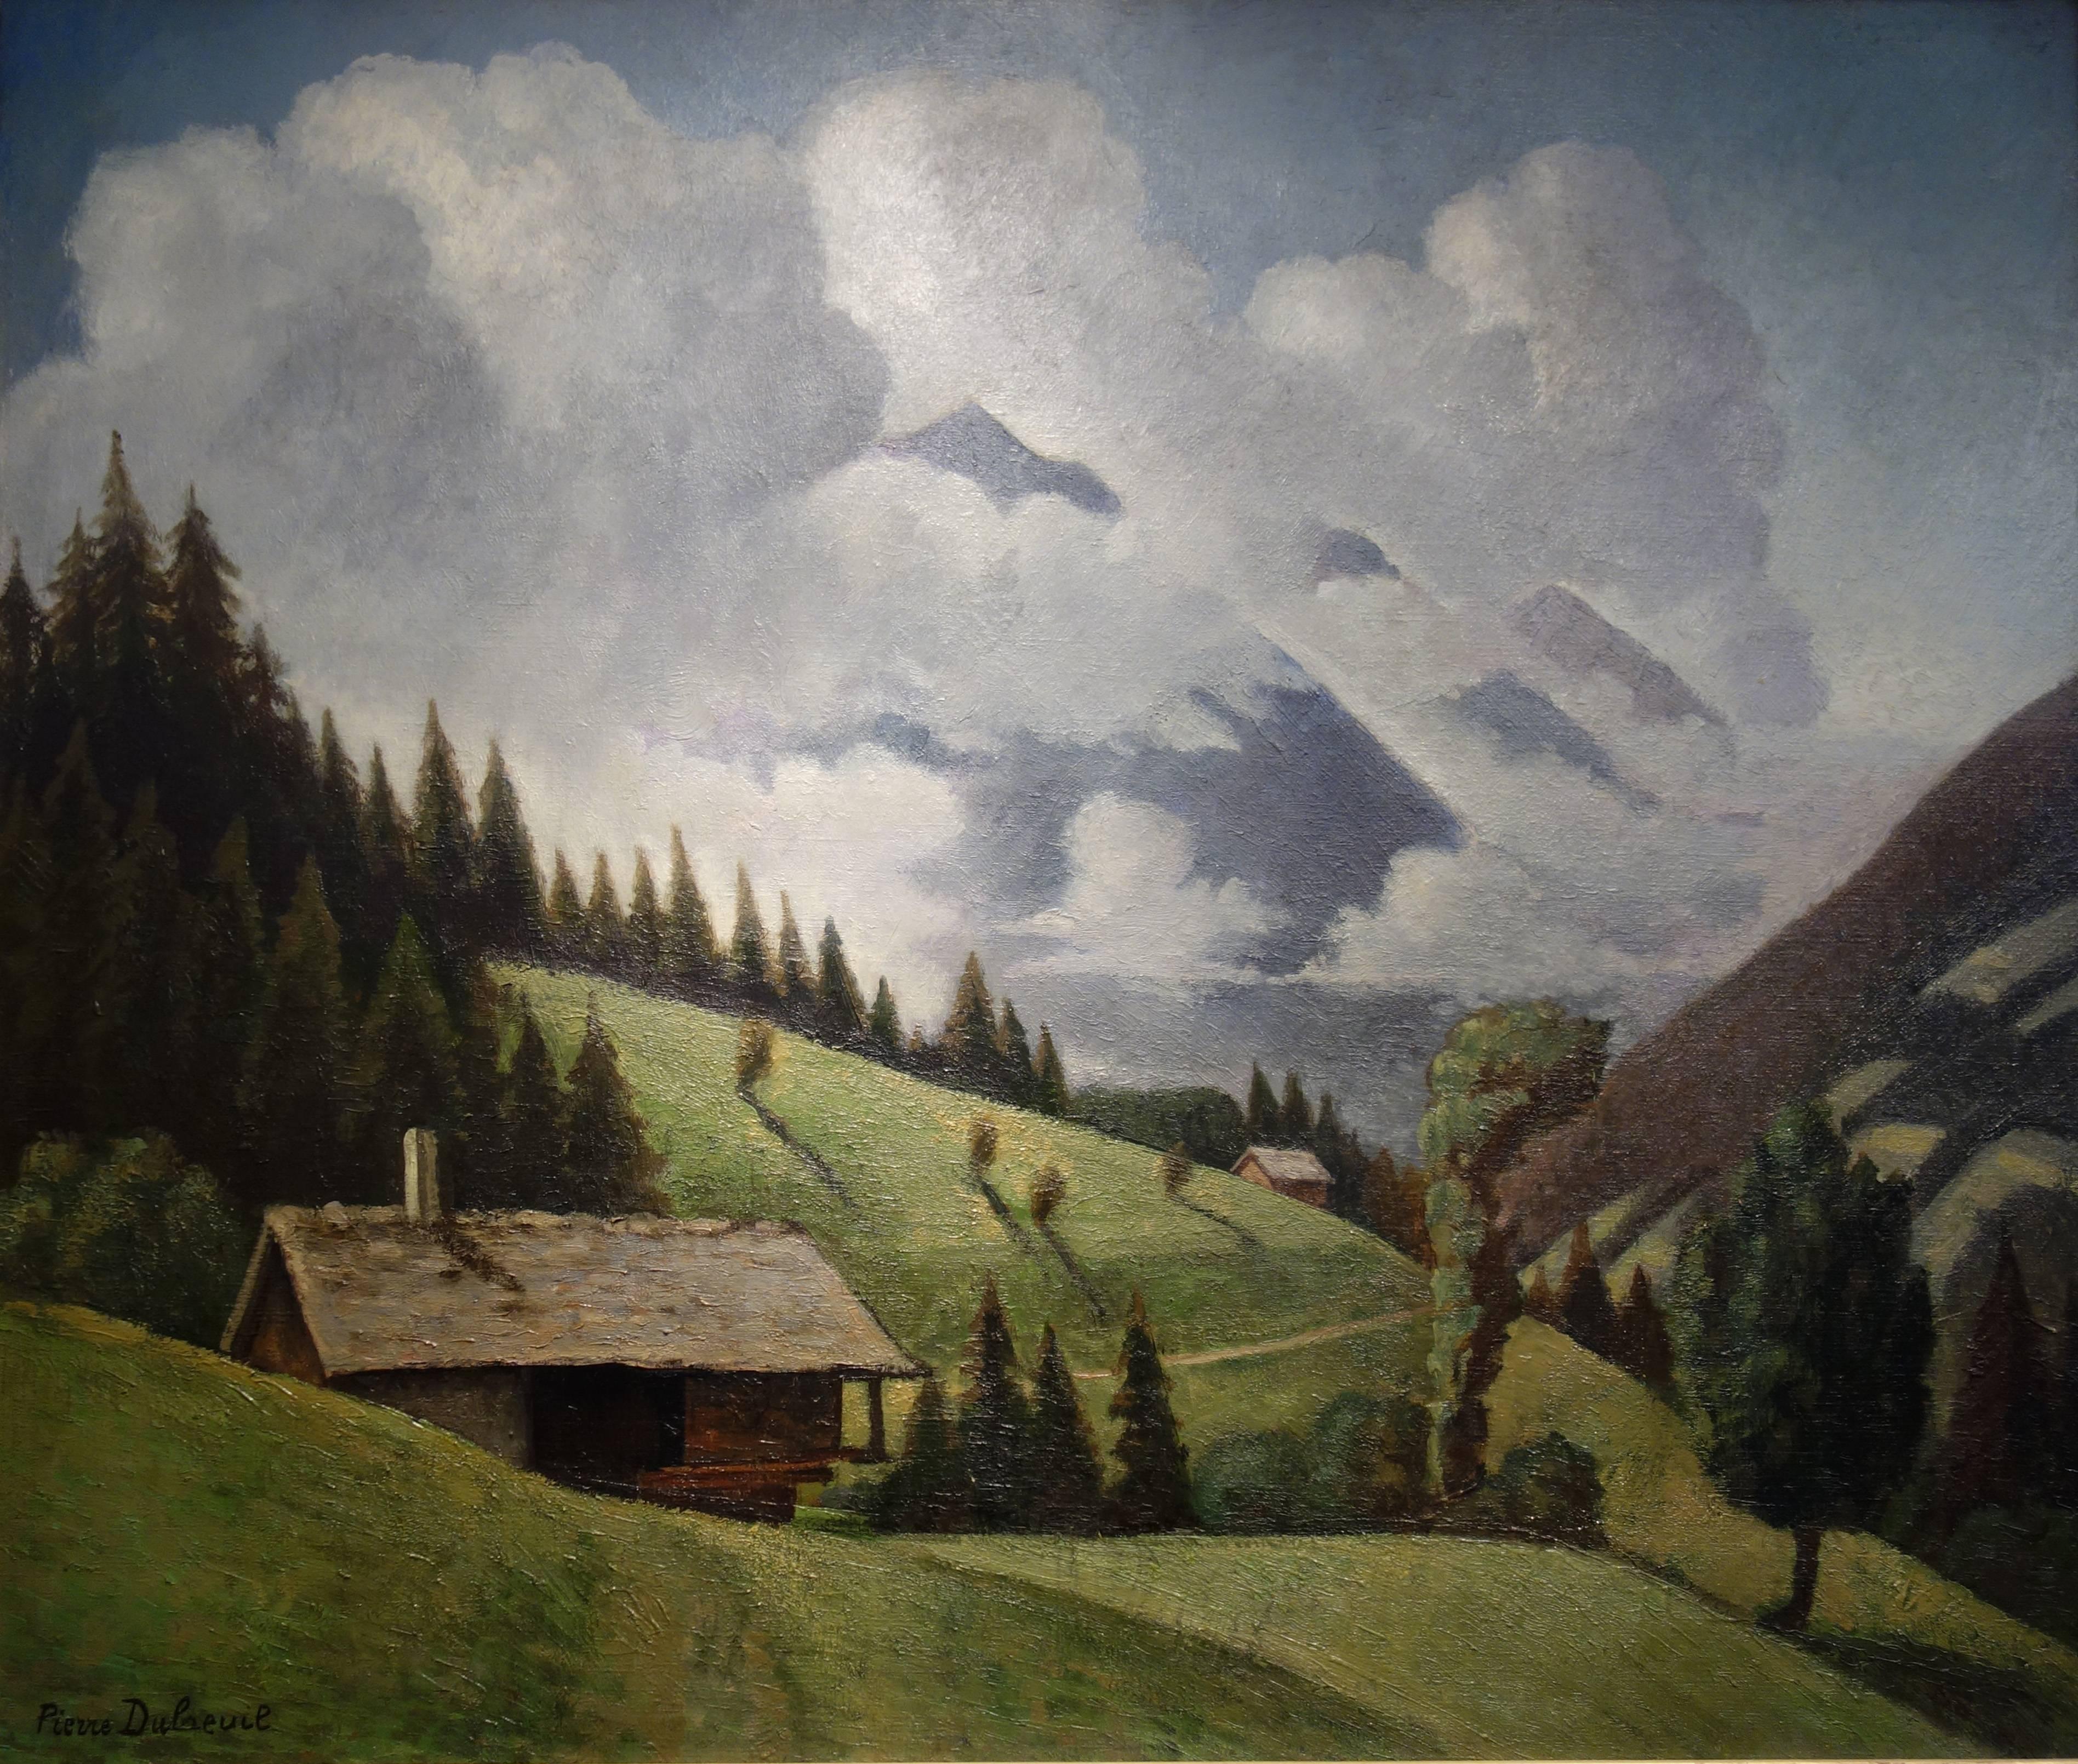 Paul Dubreuil Landscape Painting – Alpine landscape with clouds